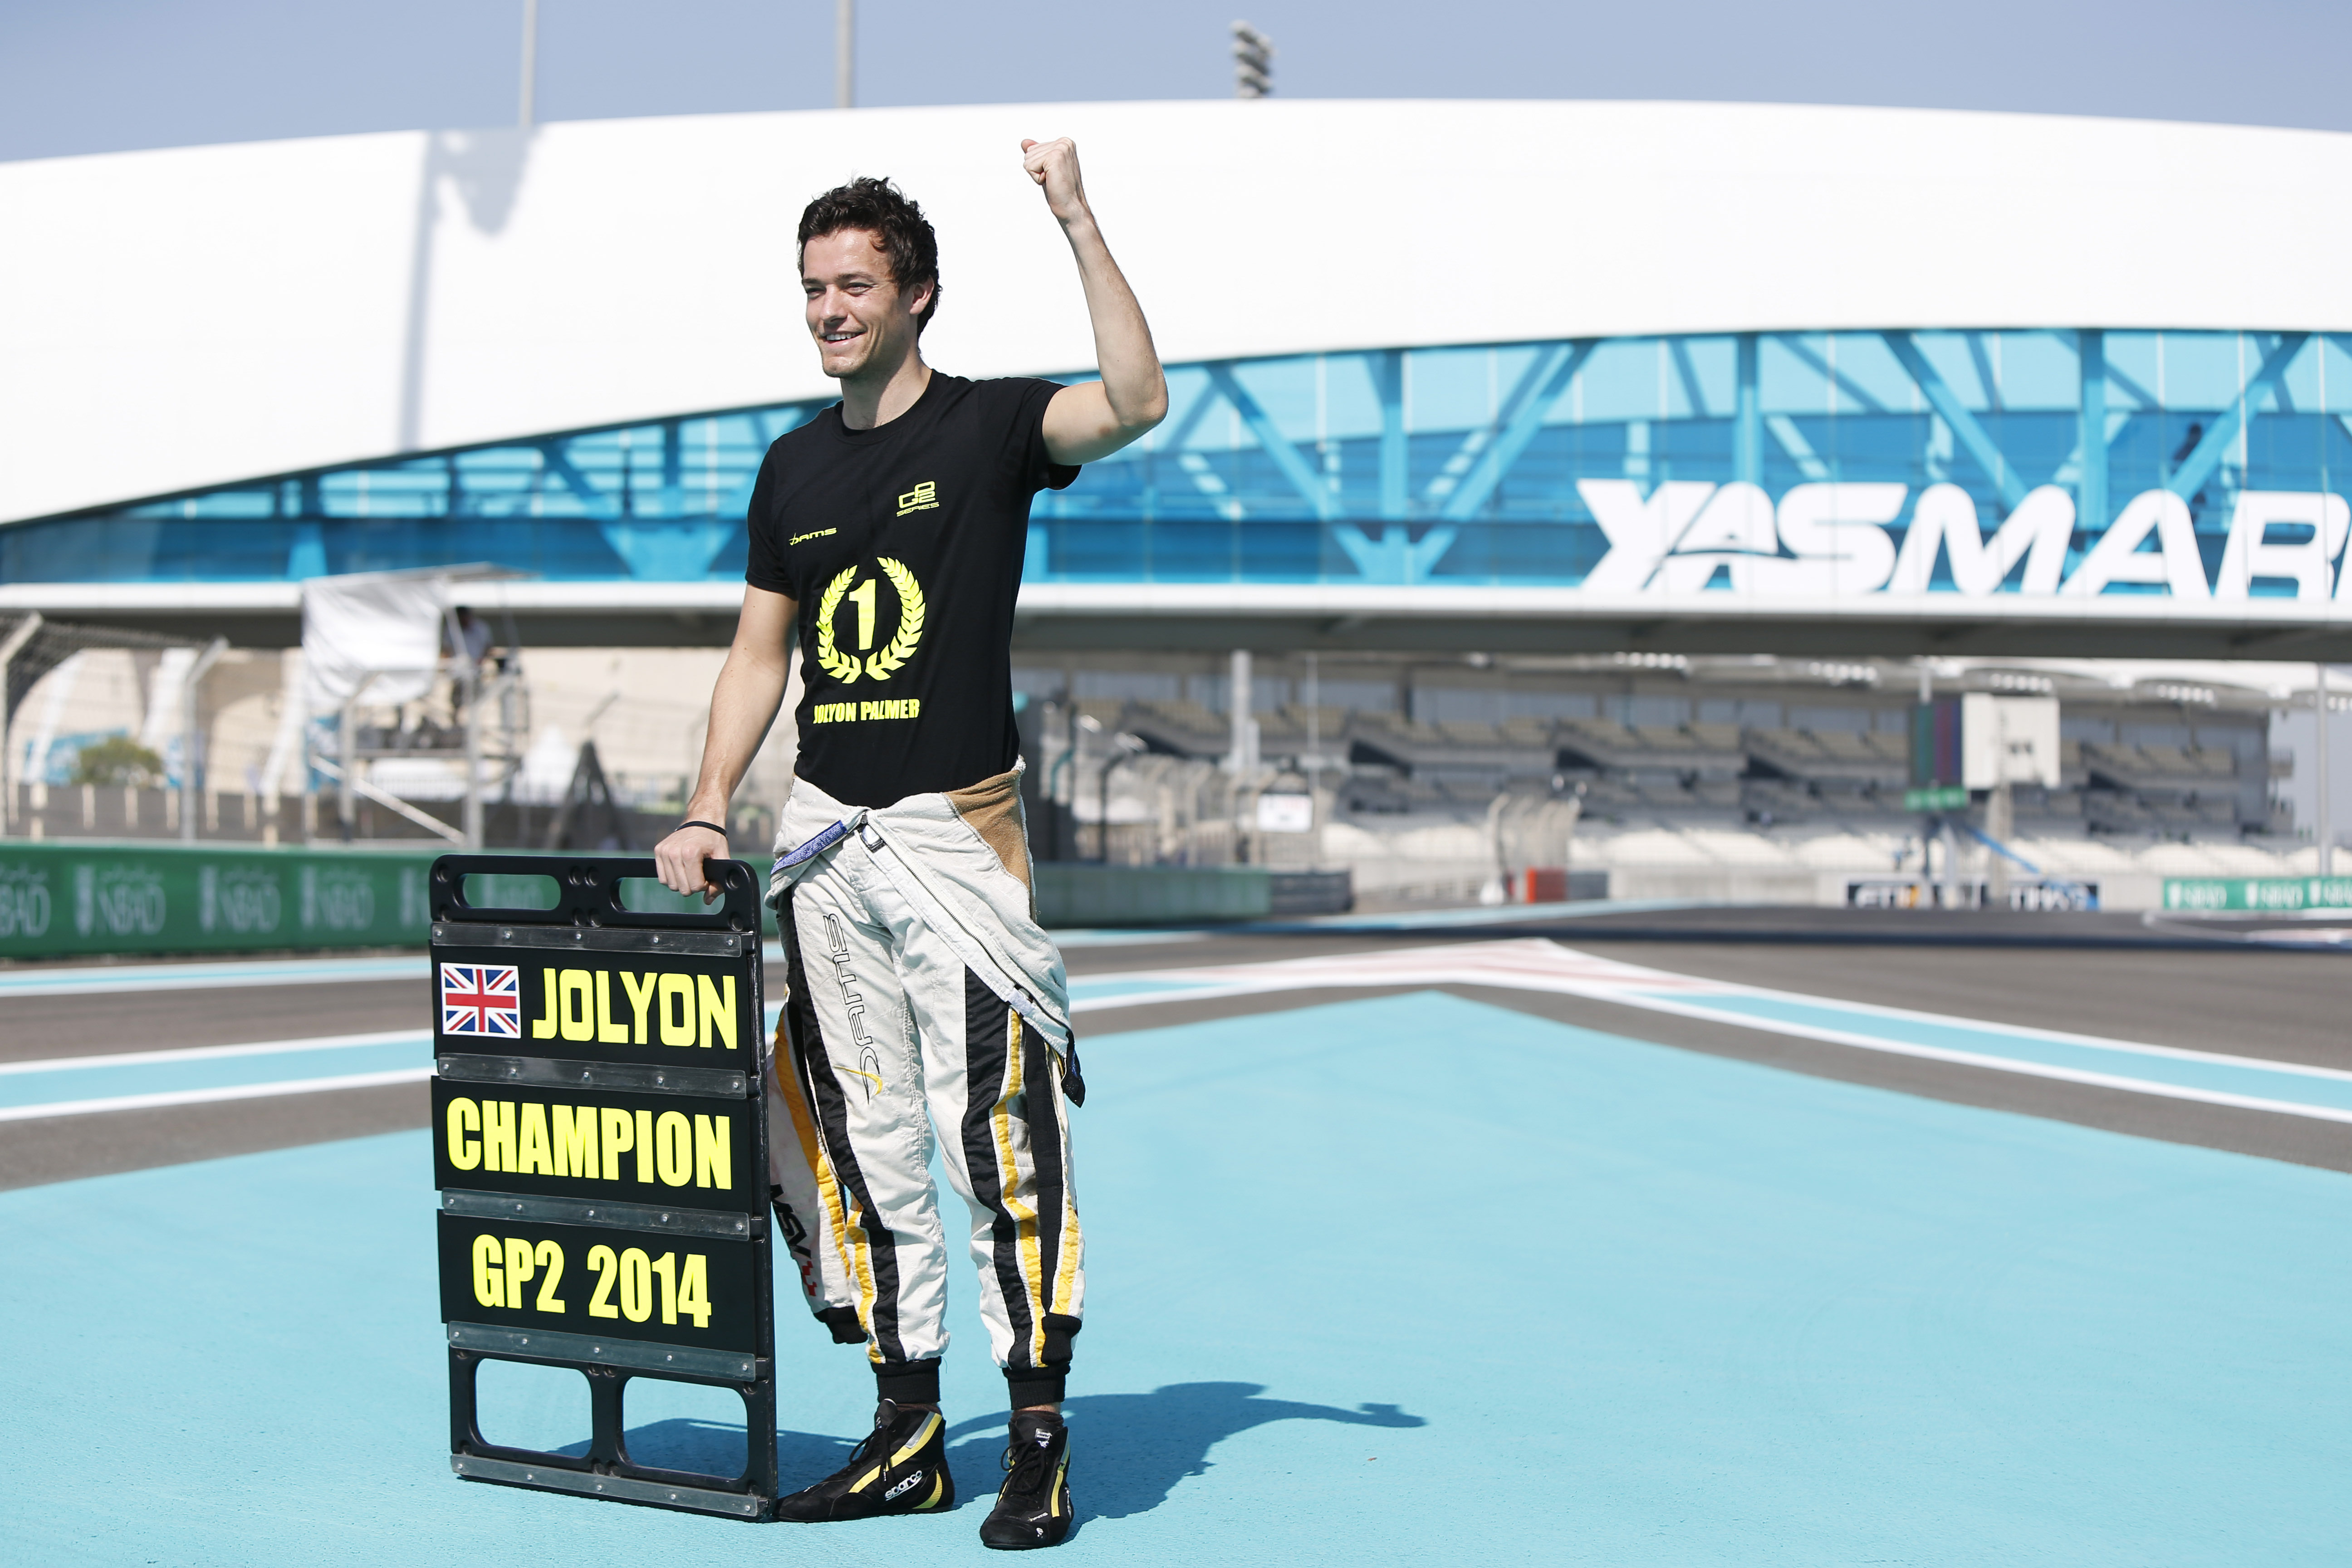 Jolyon Palmer GP2 2014